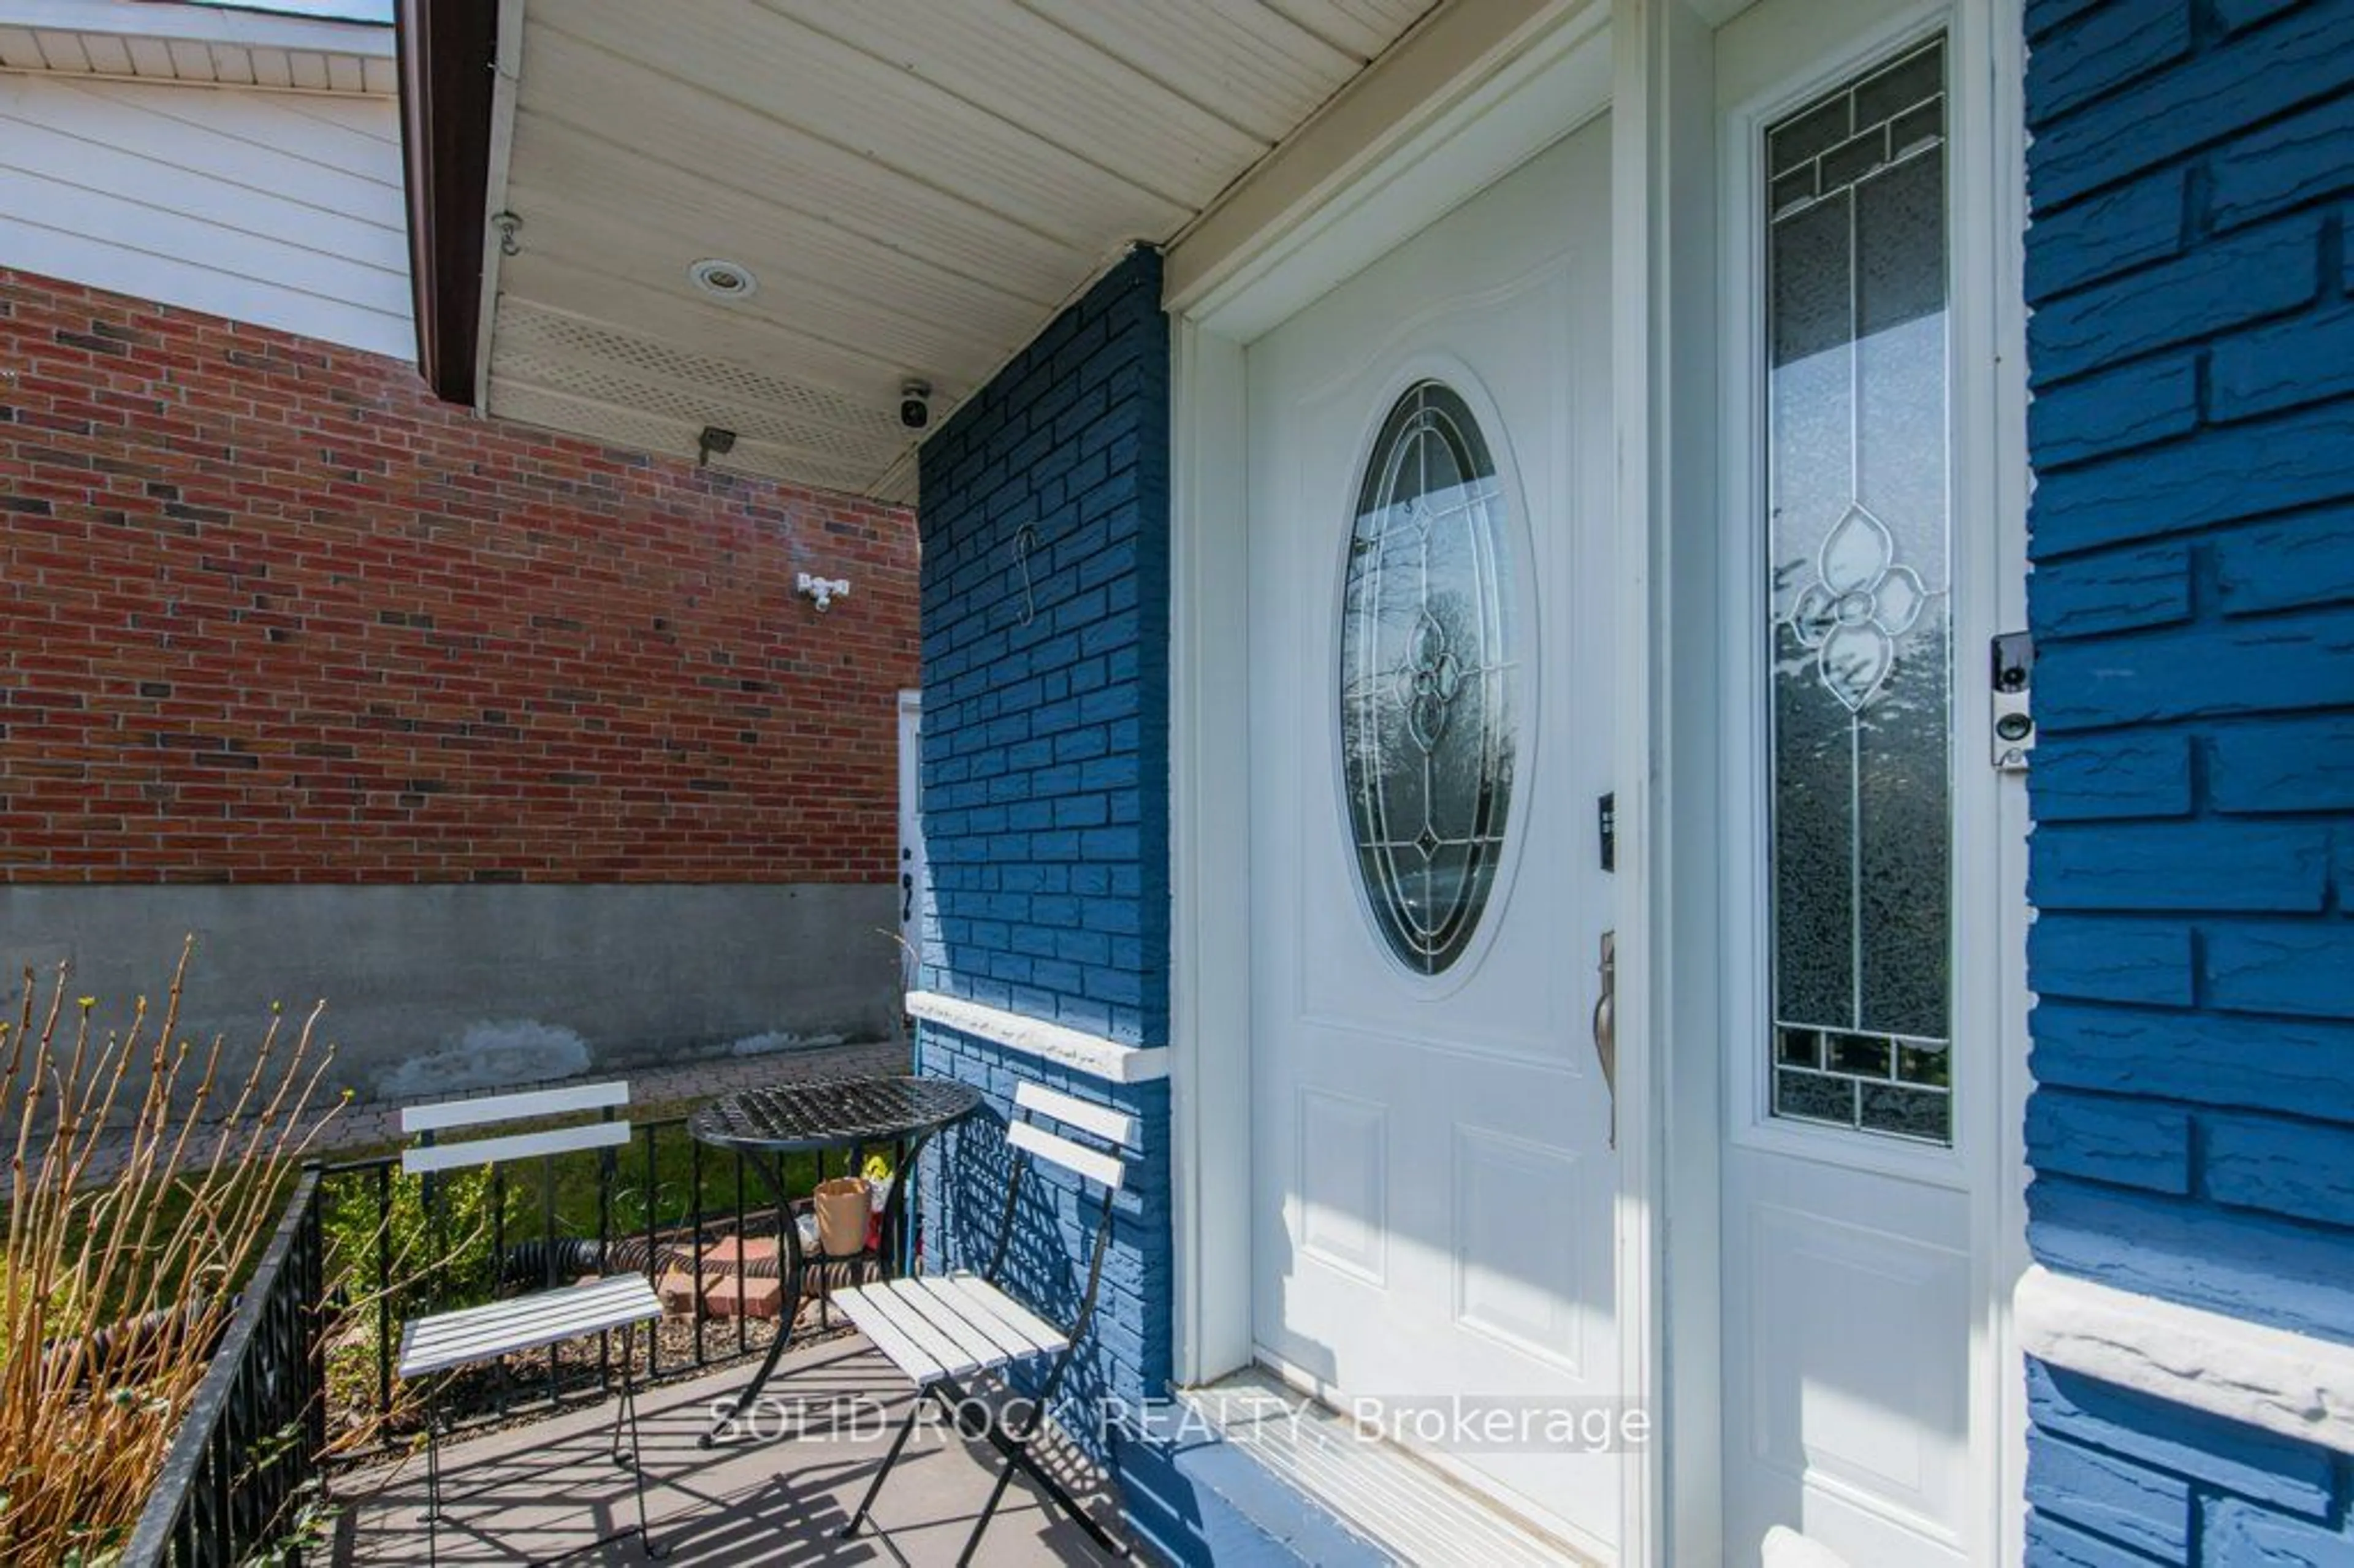 Home with brick exterior material for 167 Weir Cres, Toronto Ontario M1E 4T1